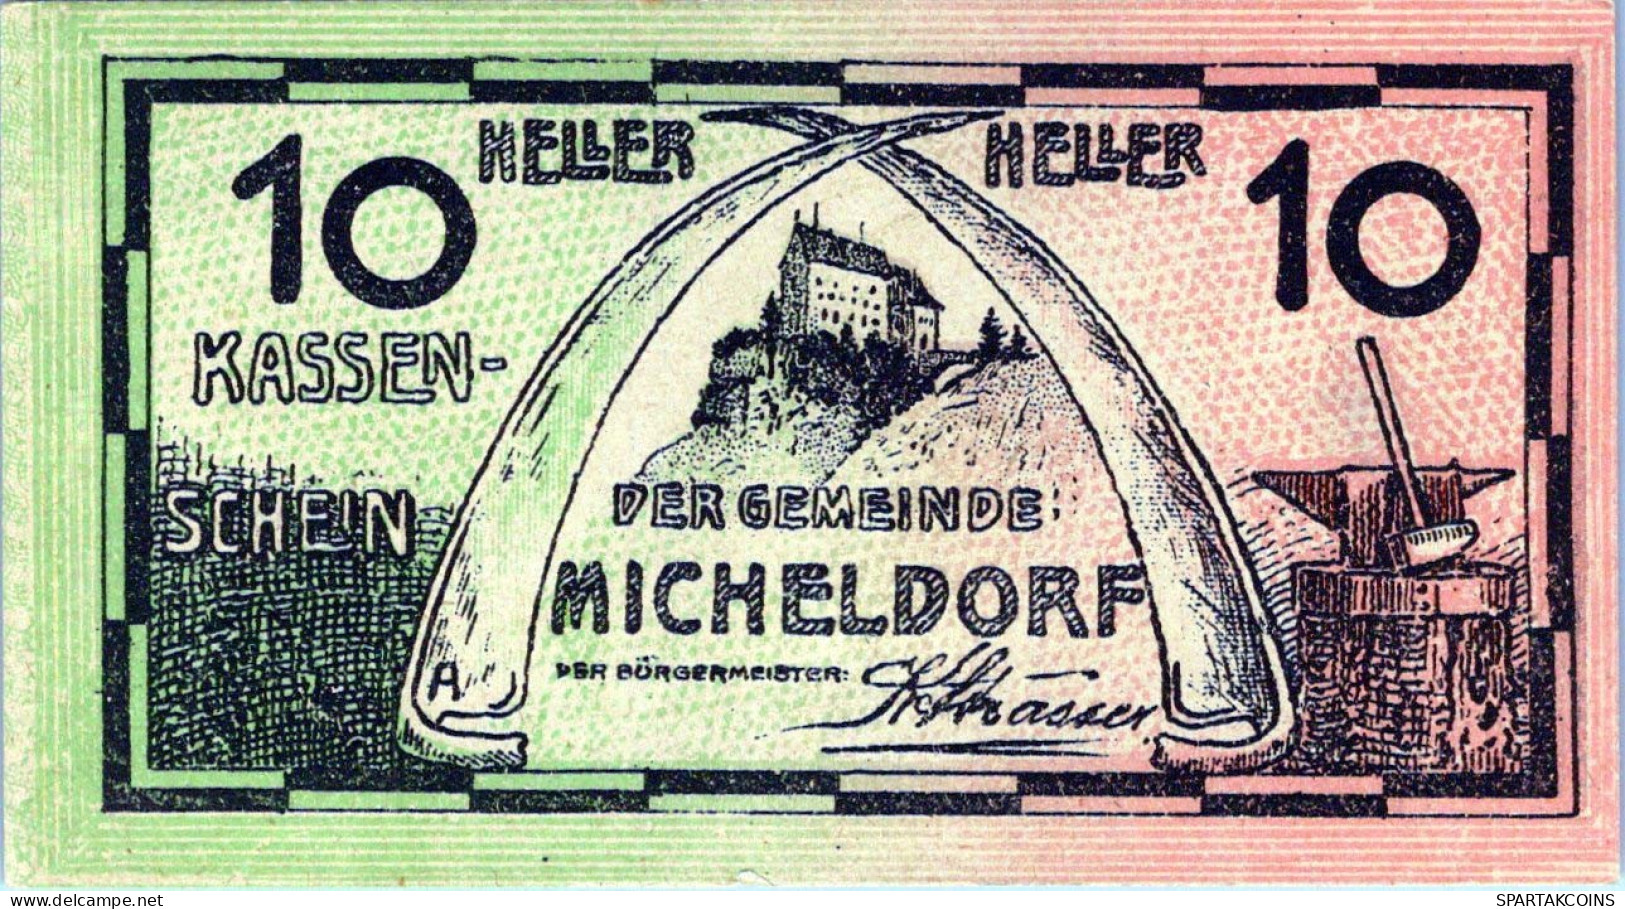 10 HELLER 1920 Stadt MICHELDORF Oberösterreich Österreich Notgeld Papiergeld Banknote #PG955 - [11] Emissions Locales